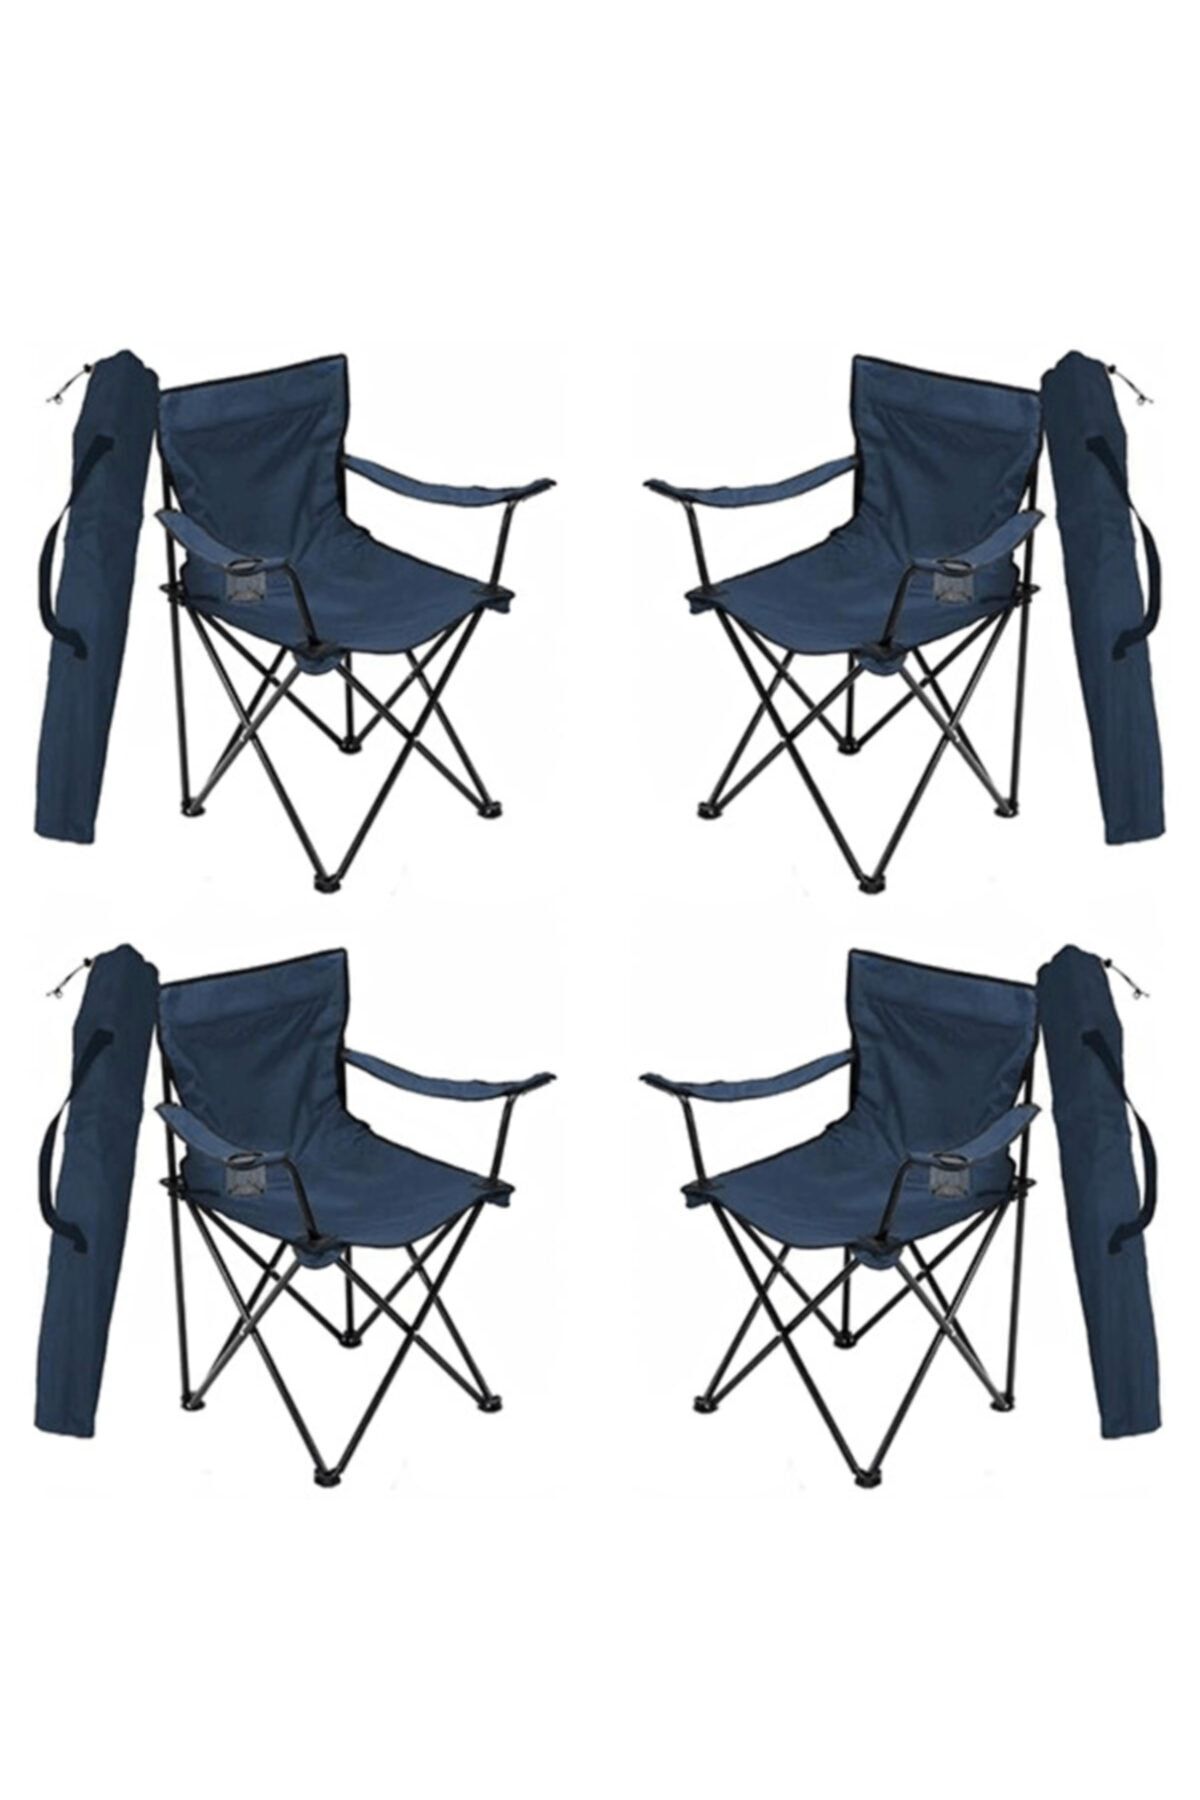 4 Adet Kamp Sandalyesi Katlanır Sandalye Bahçe Koltuğu Piknik Plaj Balkon Sandalyesi Mavi